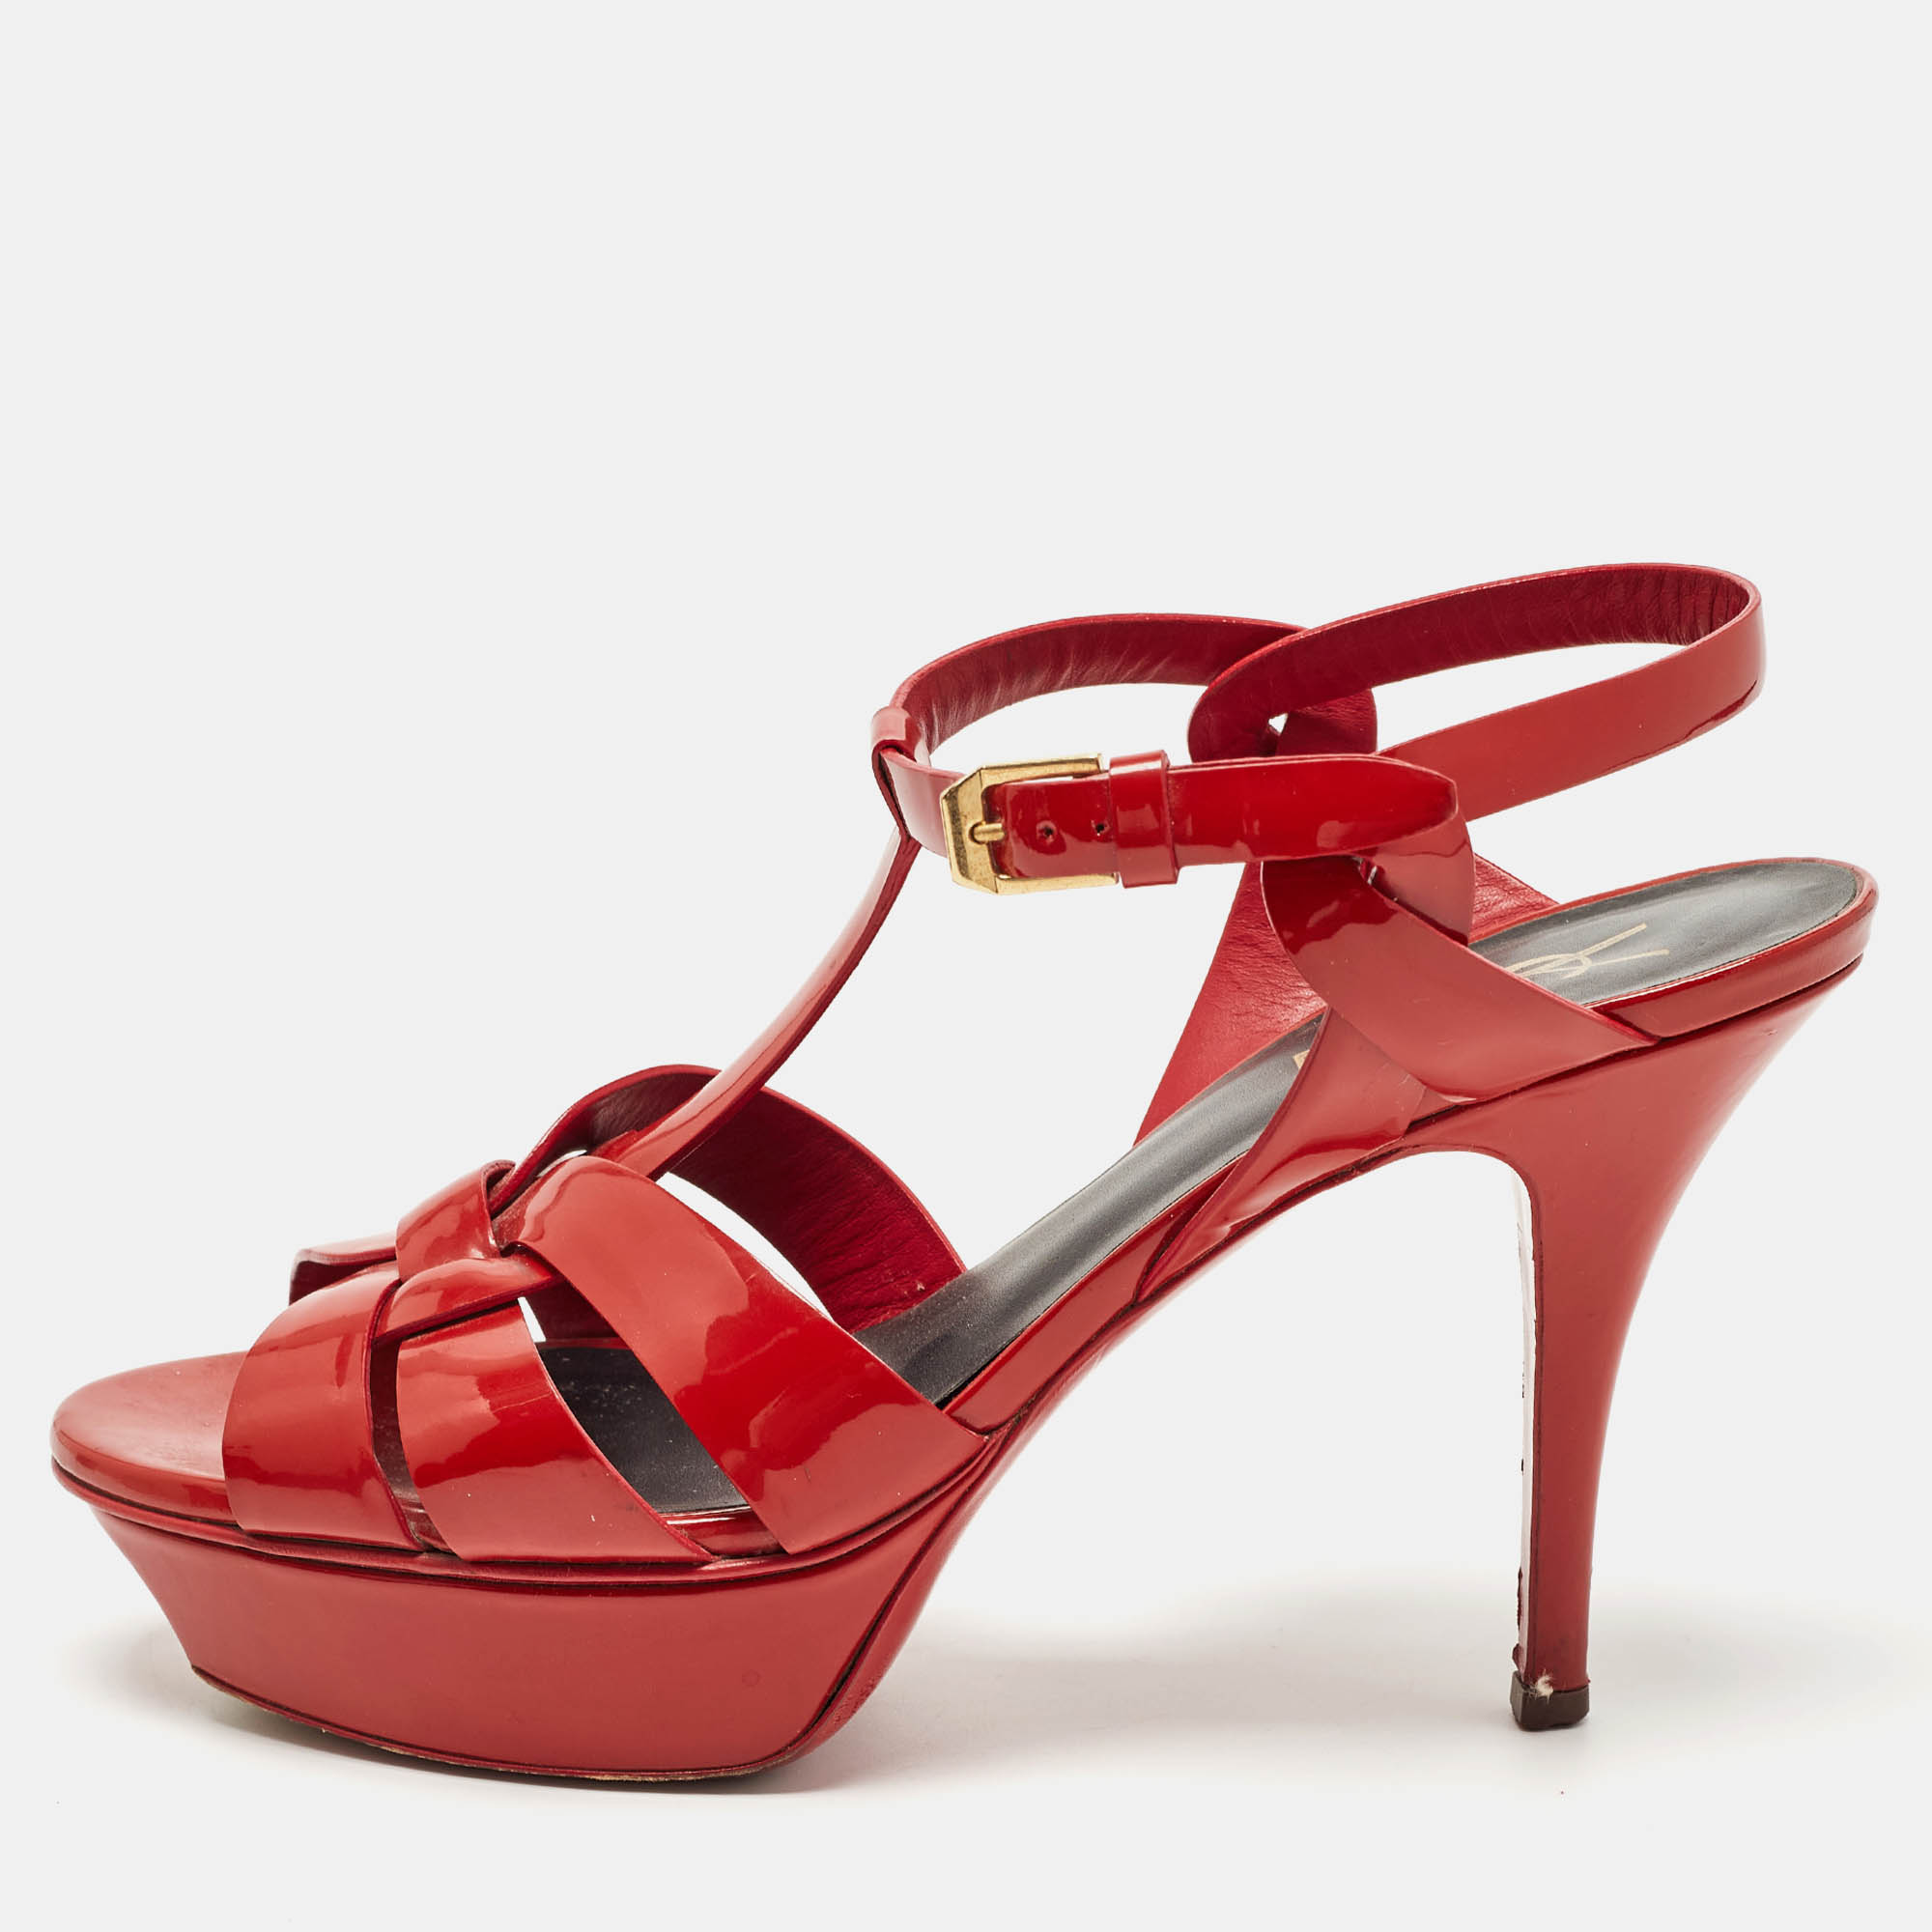 Saint laurent paris saint laurent red patent leather tribute sandals size 38